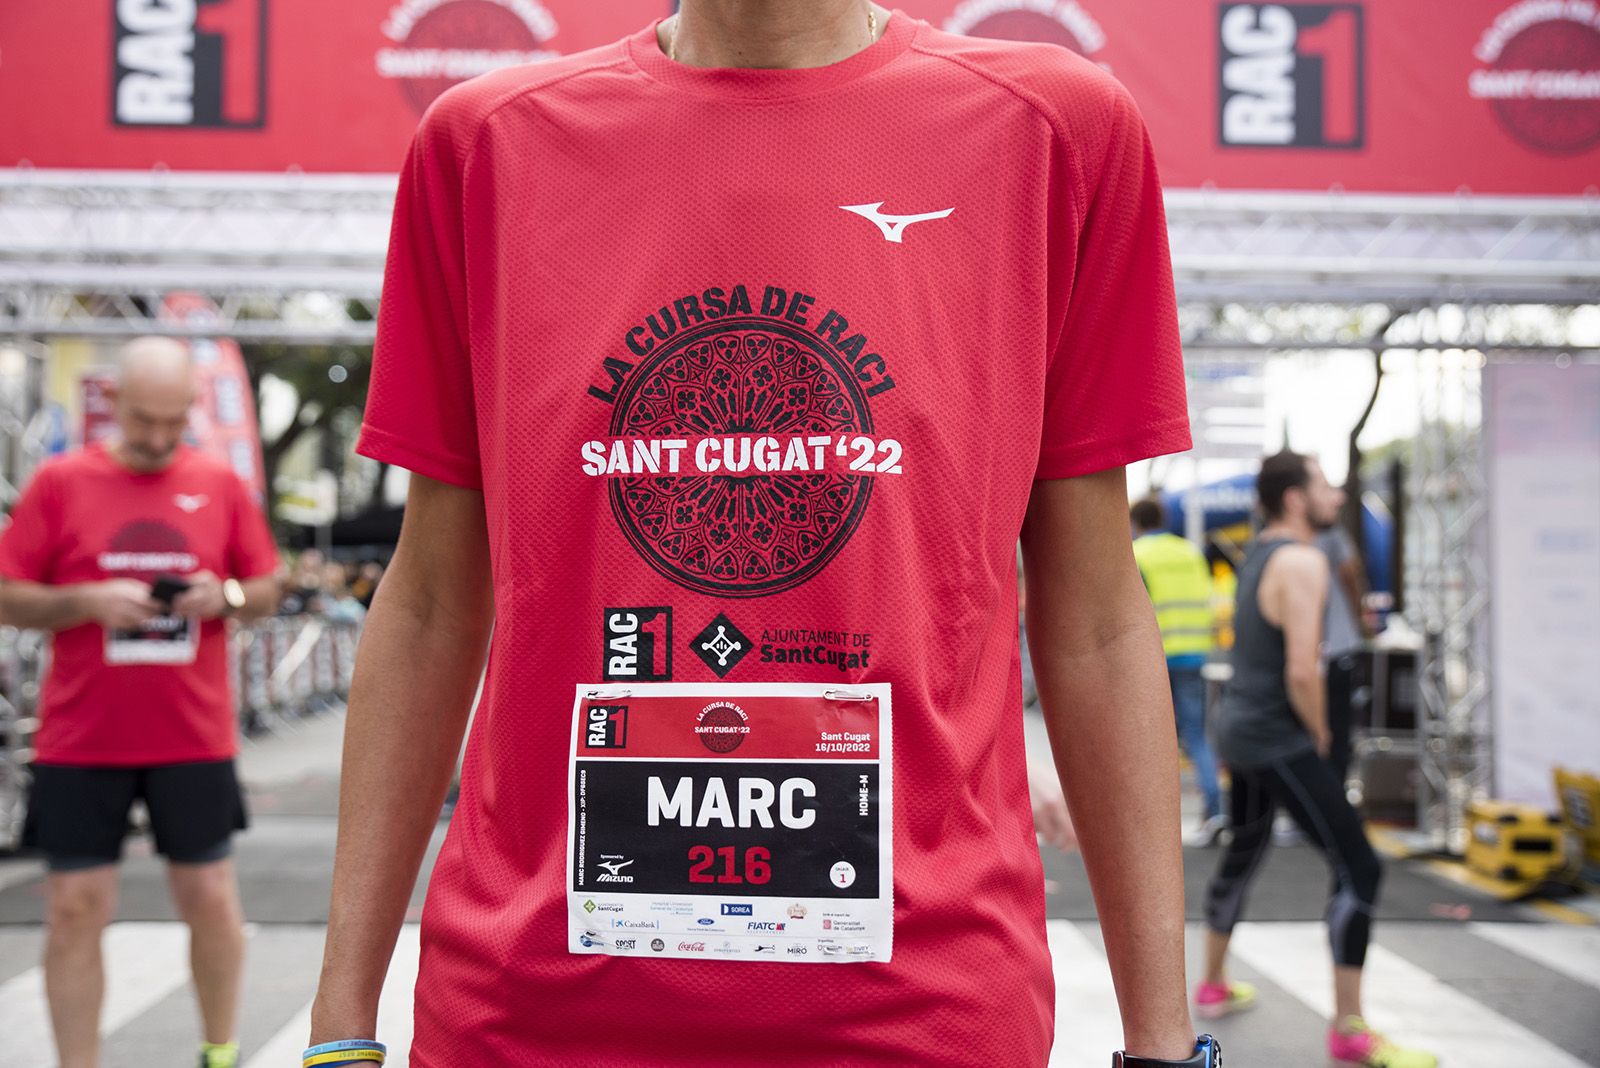 La samarreta de La Cursa de Rac1 a Sant Cugat. FOTO: Bernat Millet.